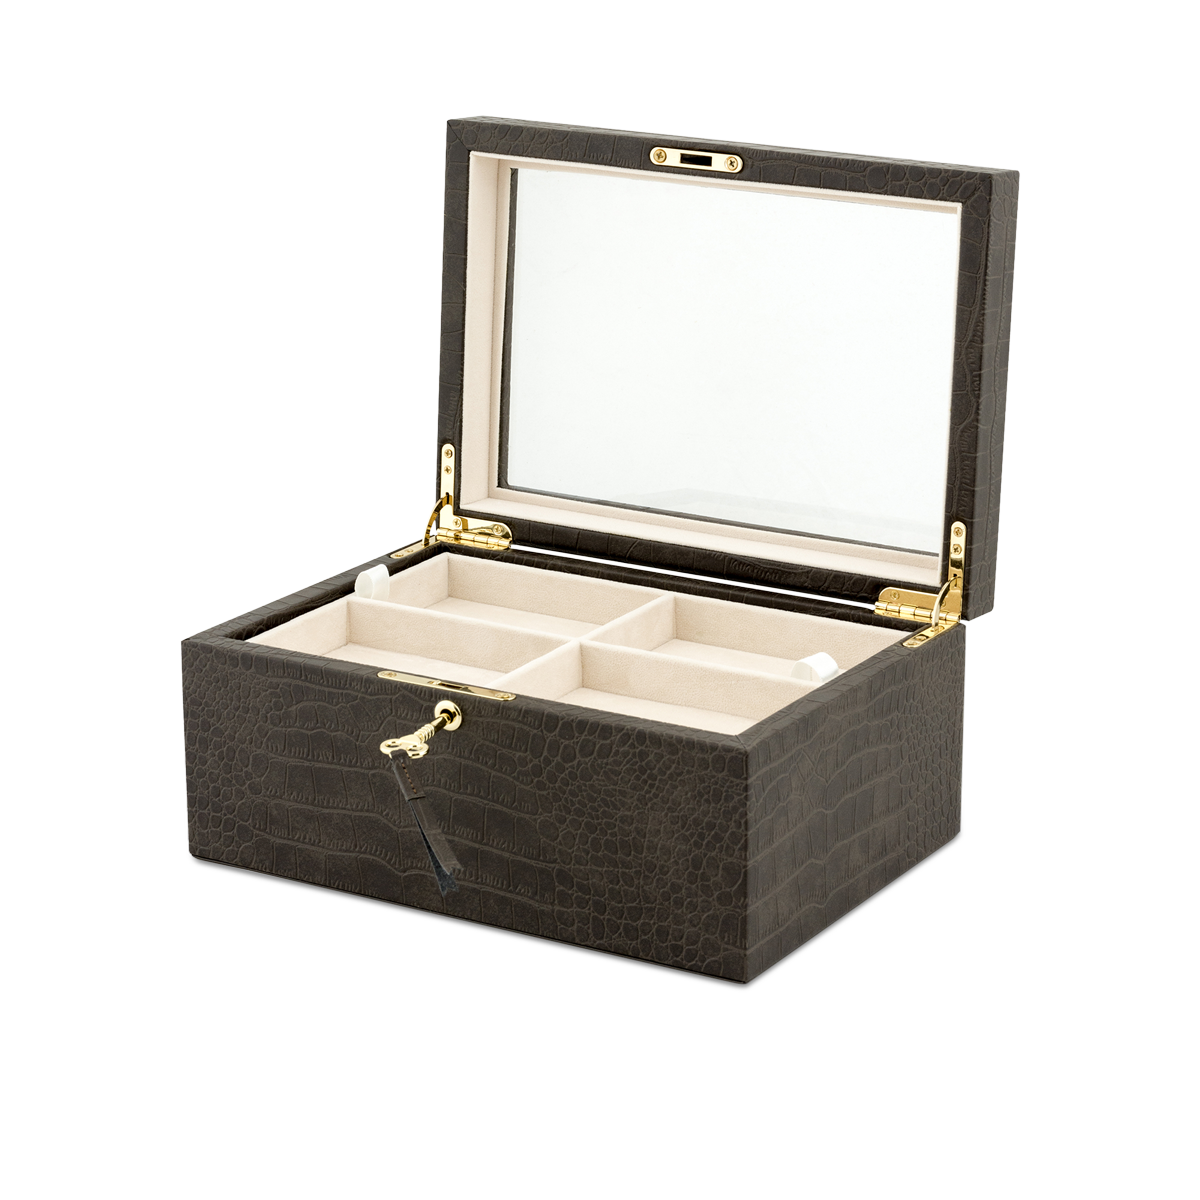 Exotique Jewellery Box